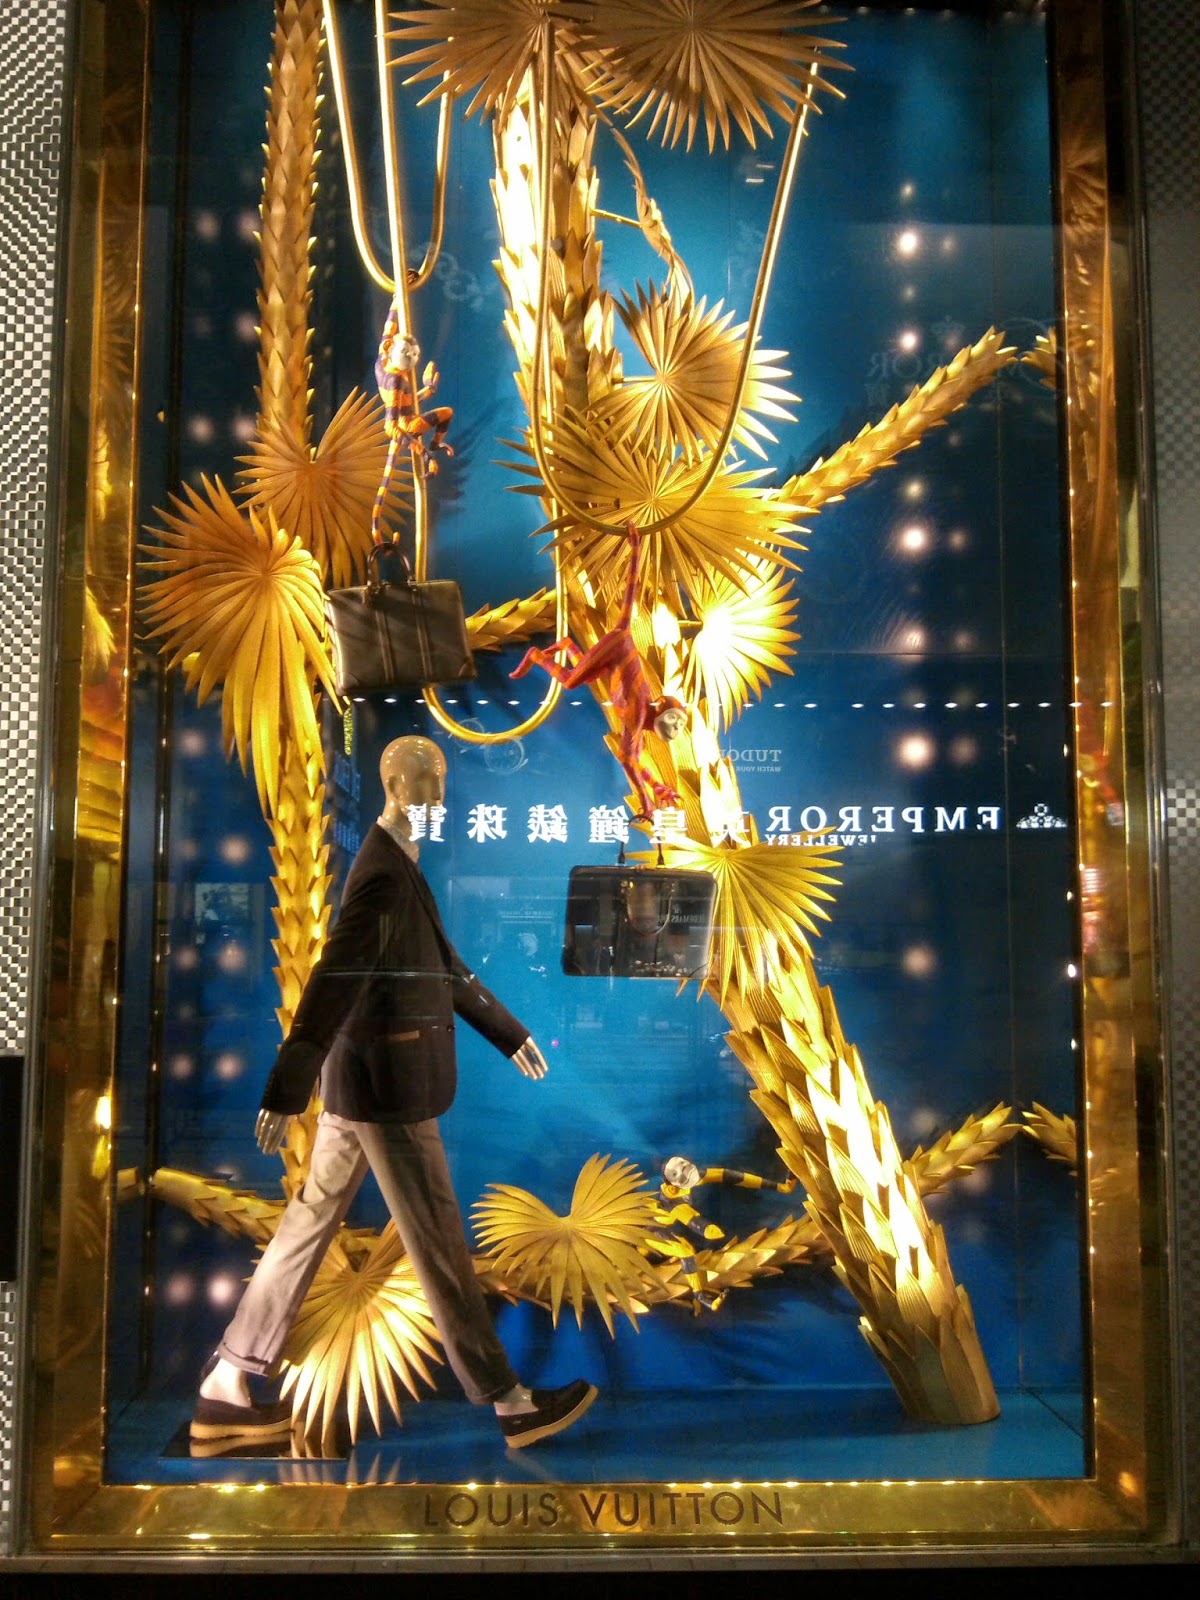 Lightning in Louis Vuitton window display - Harajuku - Gaming post